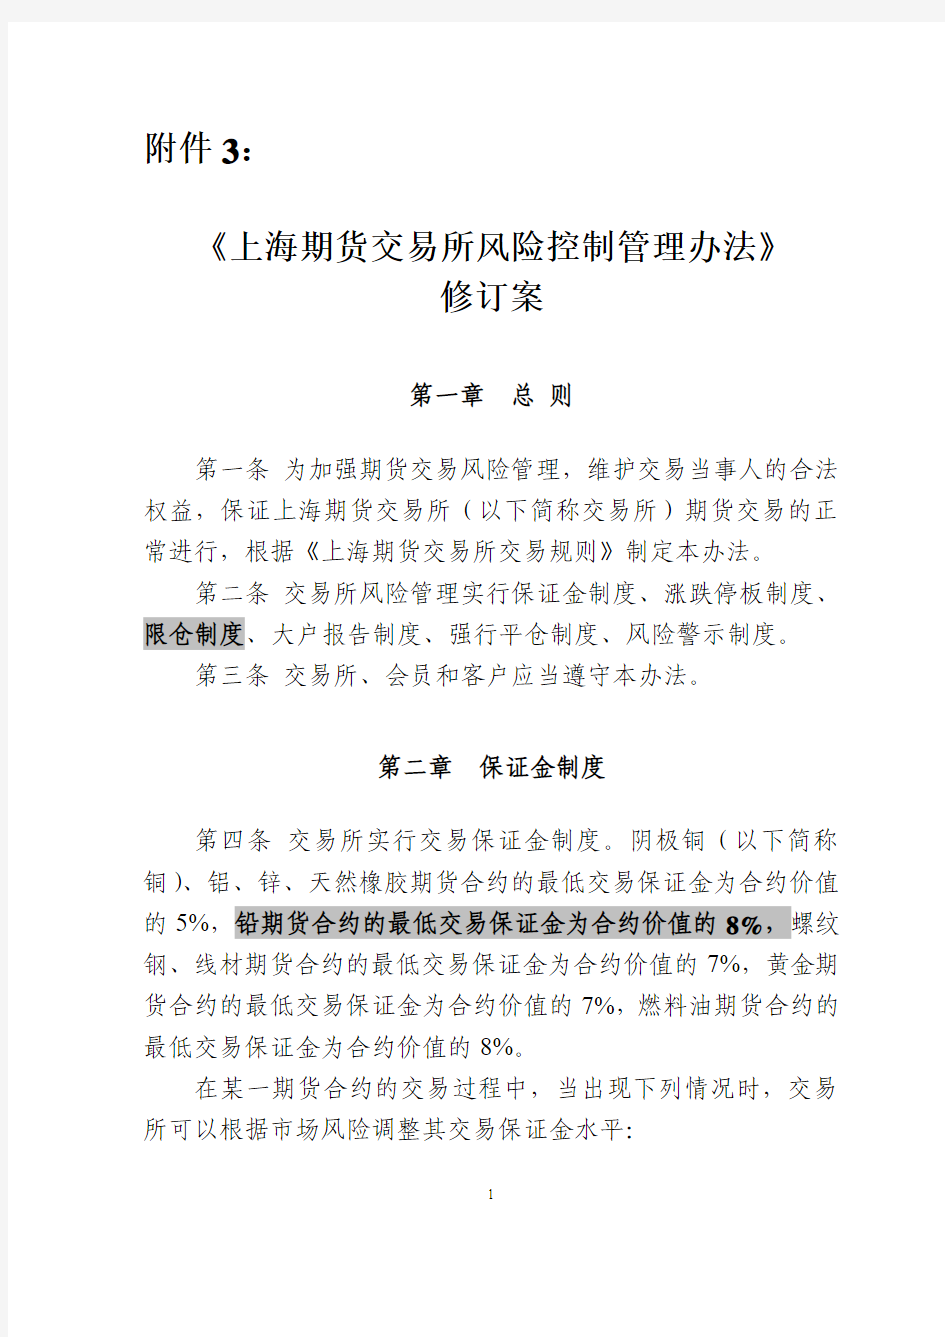 《上海期货交易所风险控制管理办法》